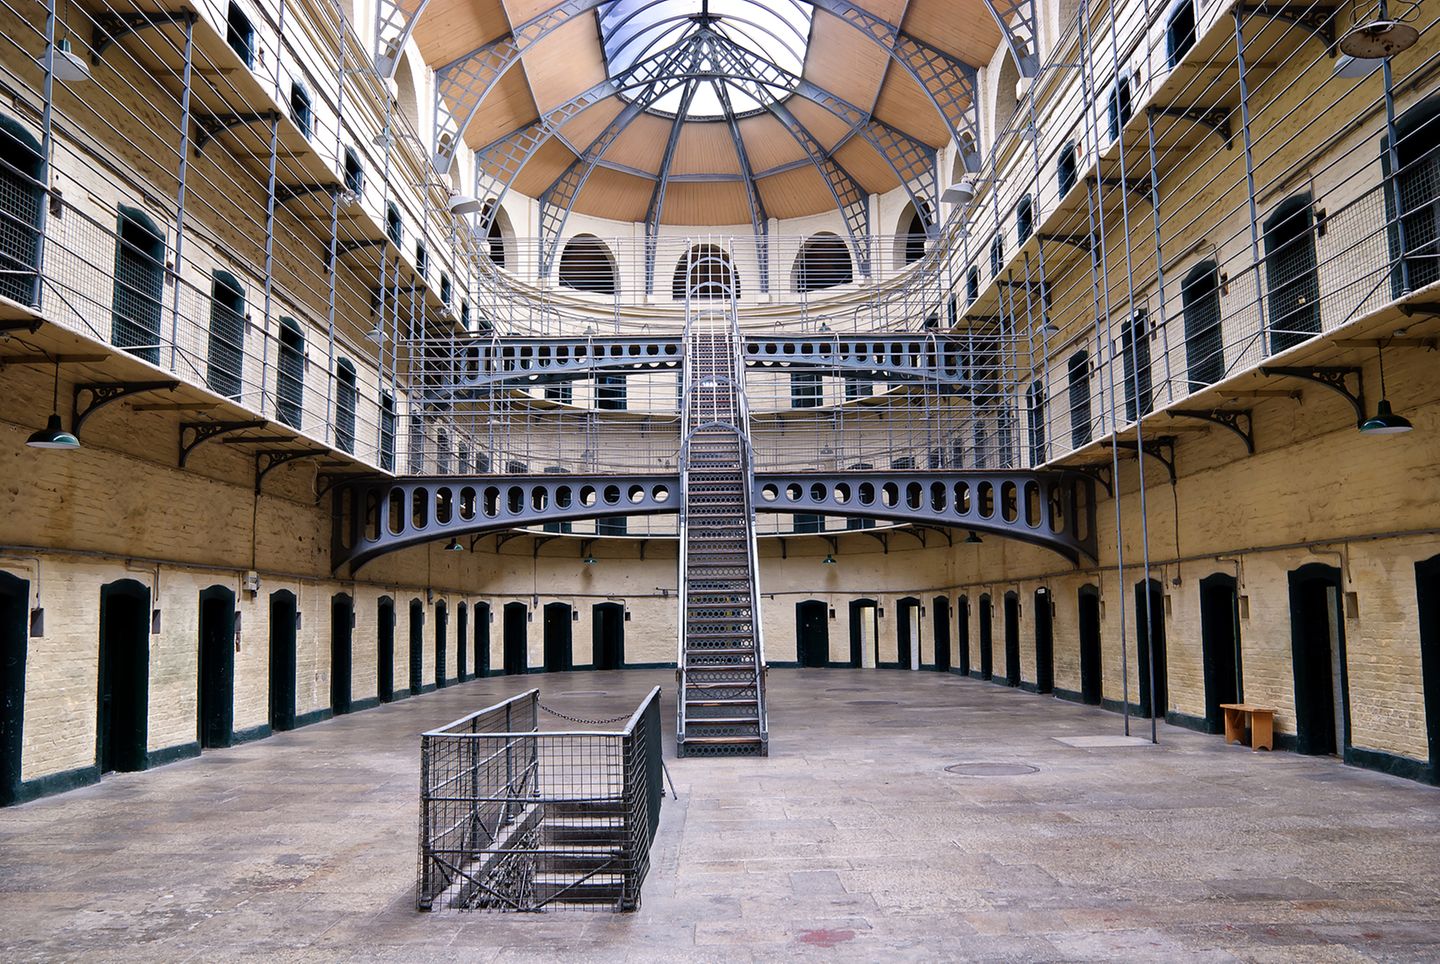 Kilmainham Gaol in Dublin